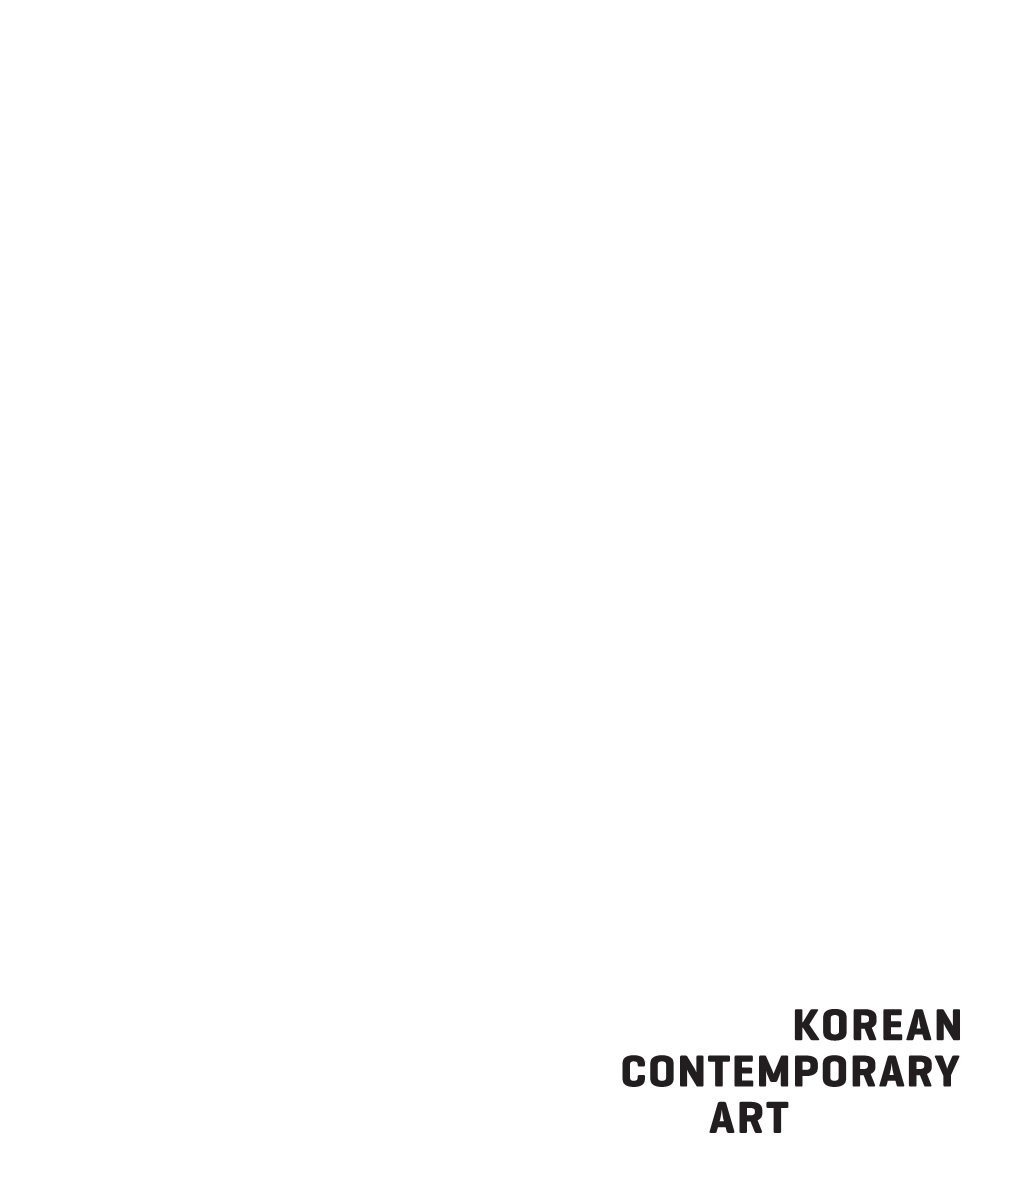 Korean Contemporary Art